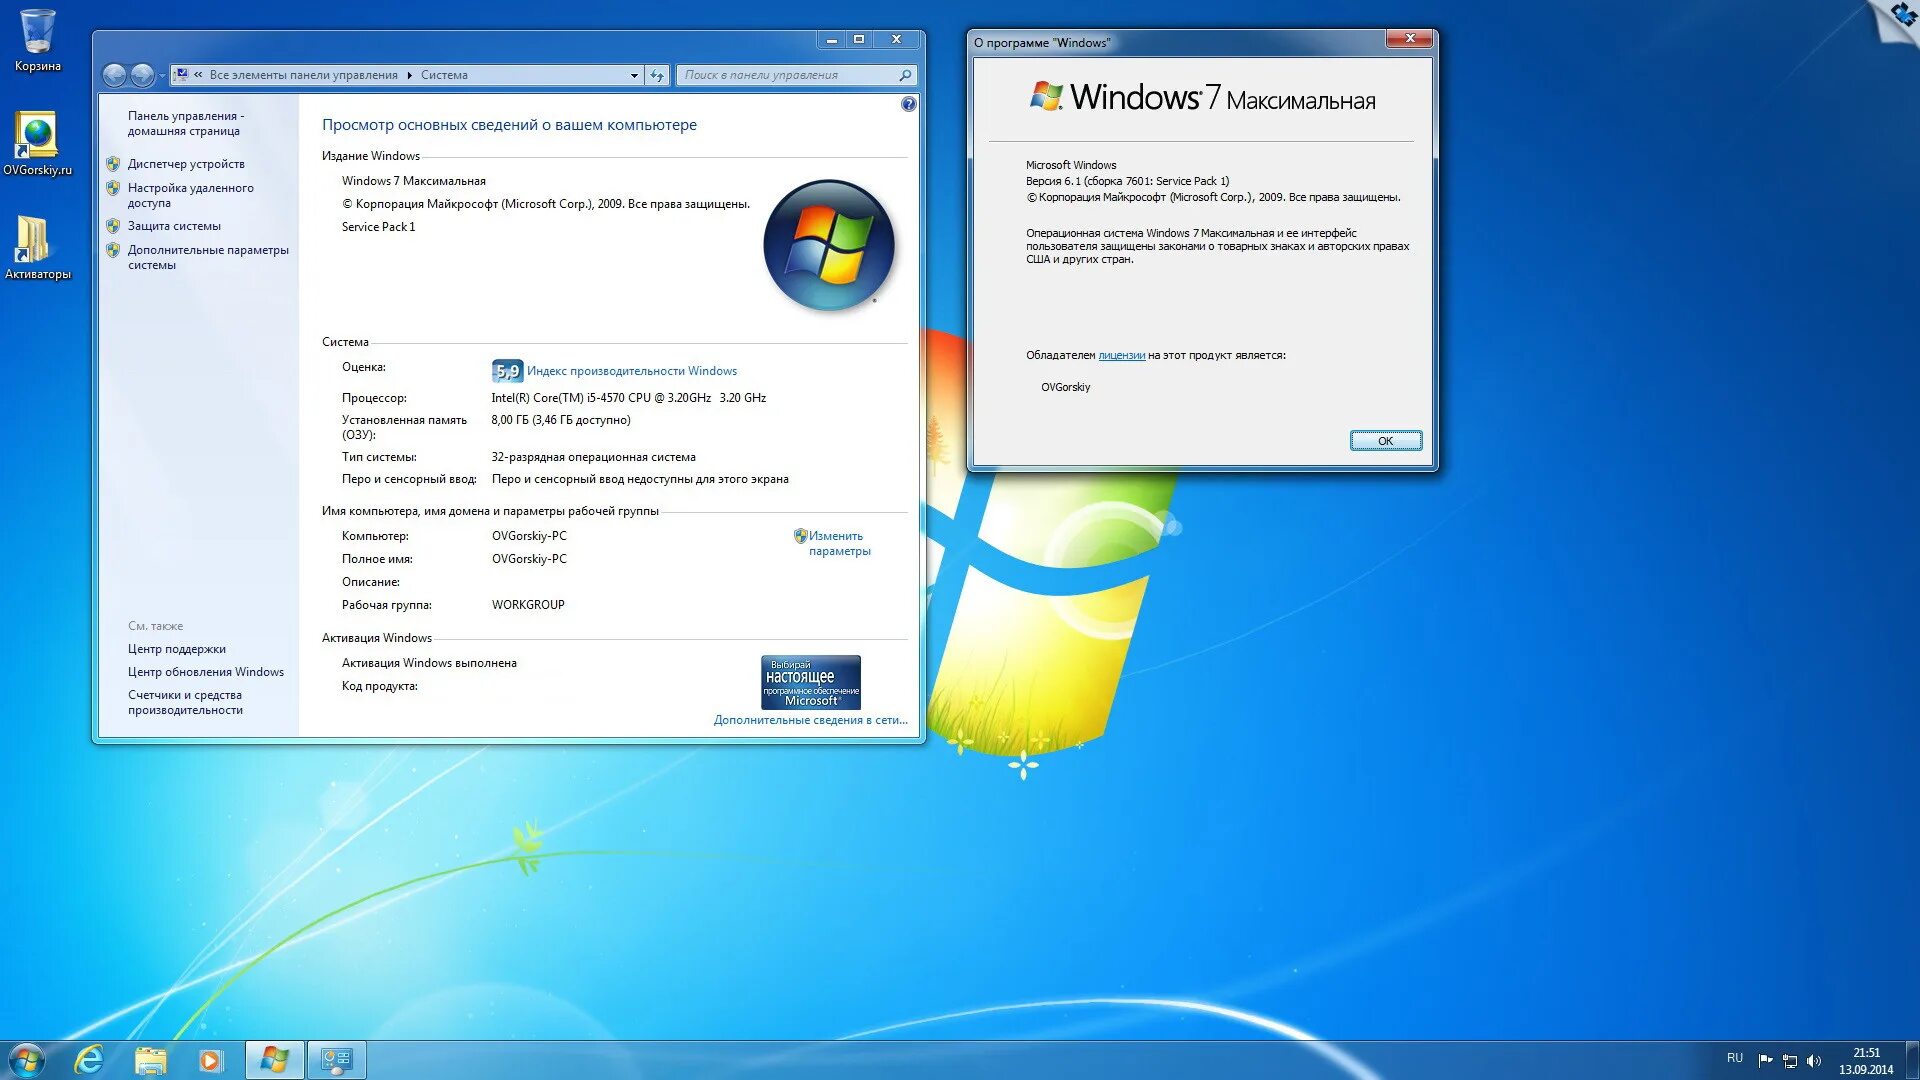 Windows 7 информация. Установочный ОС Windows 7. Характеристики ОС Windows 7. Windows 7 максимальная. Windows 7 максимальная компьютер.